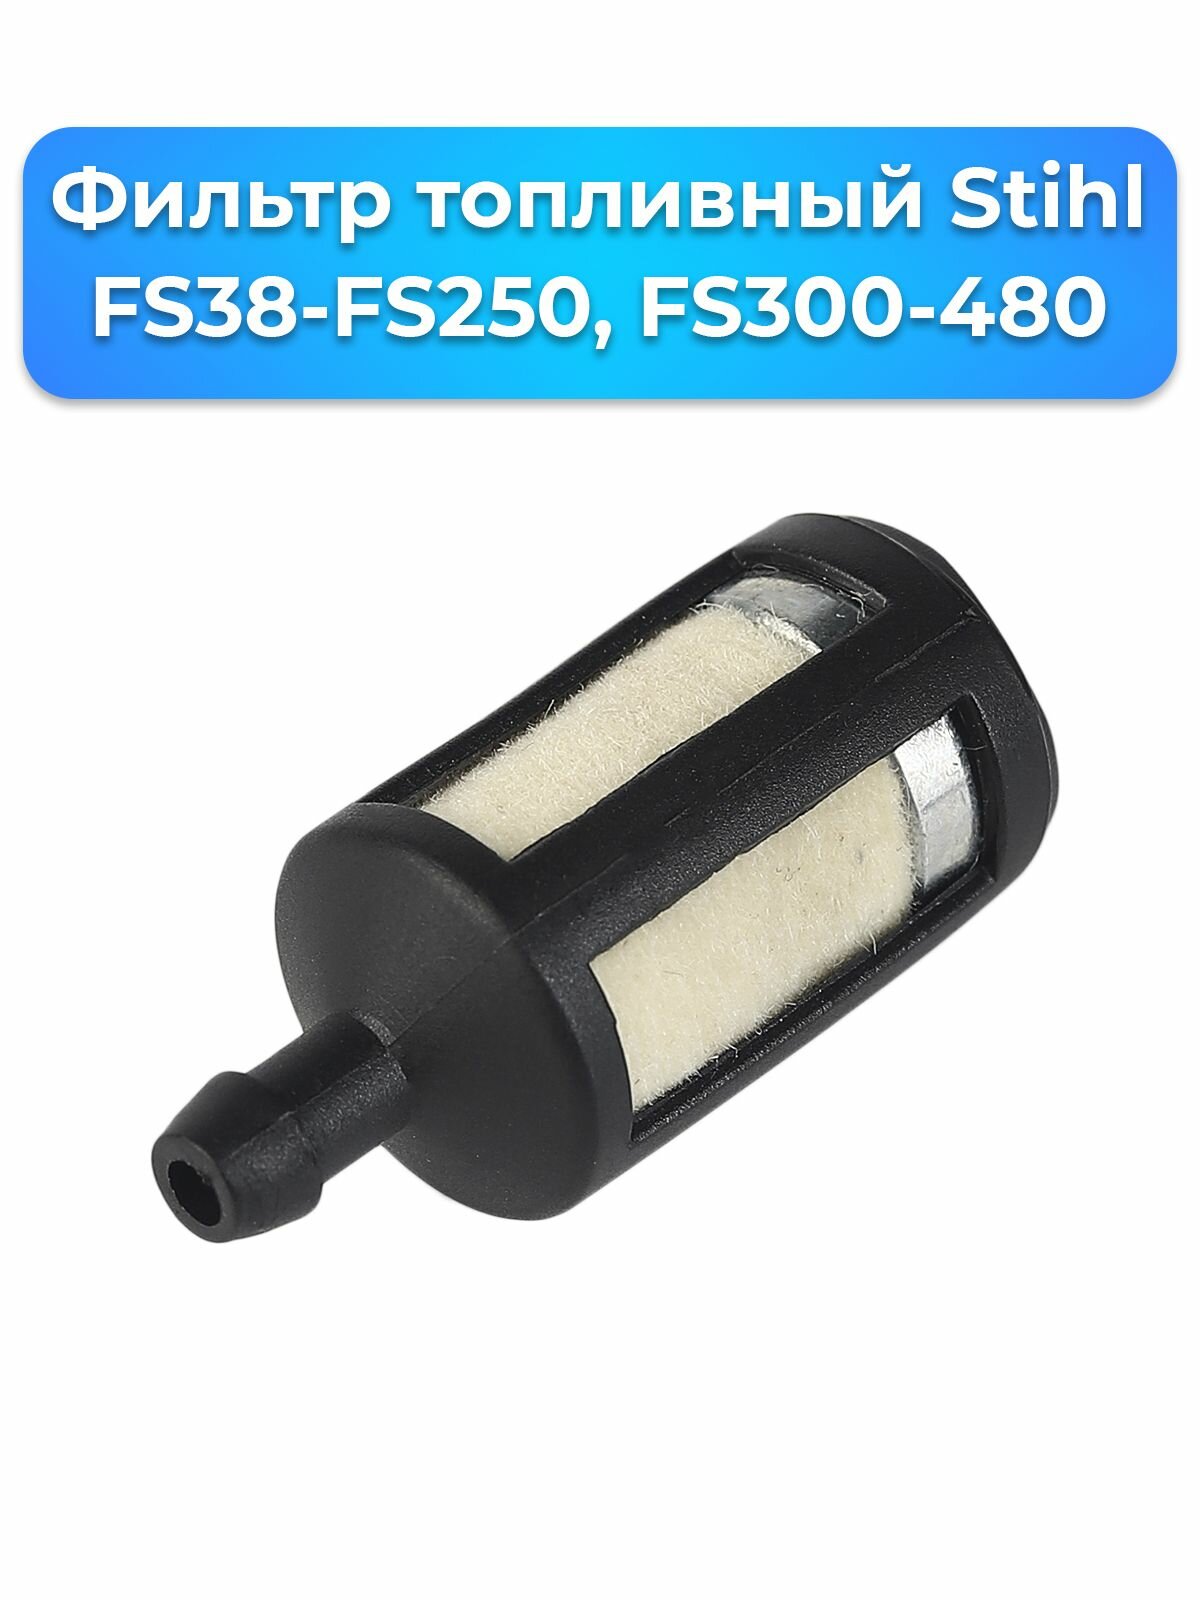 Фильтр топливный Stihl FS38-FS250, FS300-480 (0000-350-3502), Для мотокос Stihl FS38-FS250, кусторезов FS300-FS480 - фотография № 3